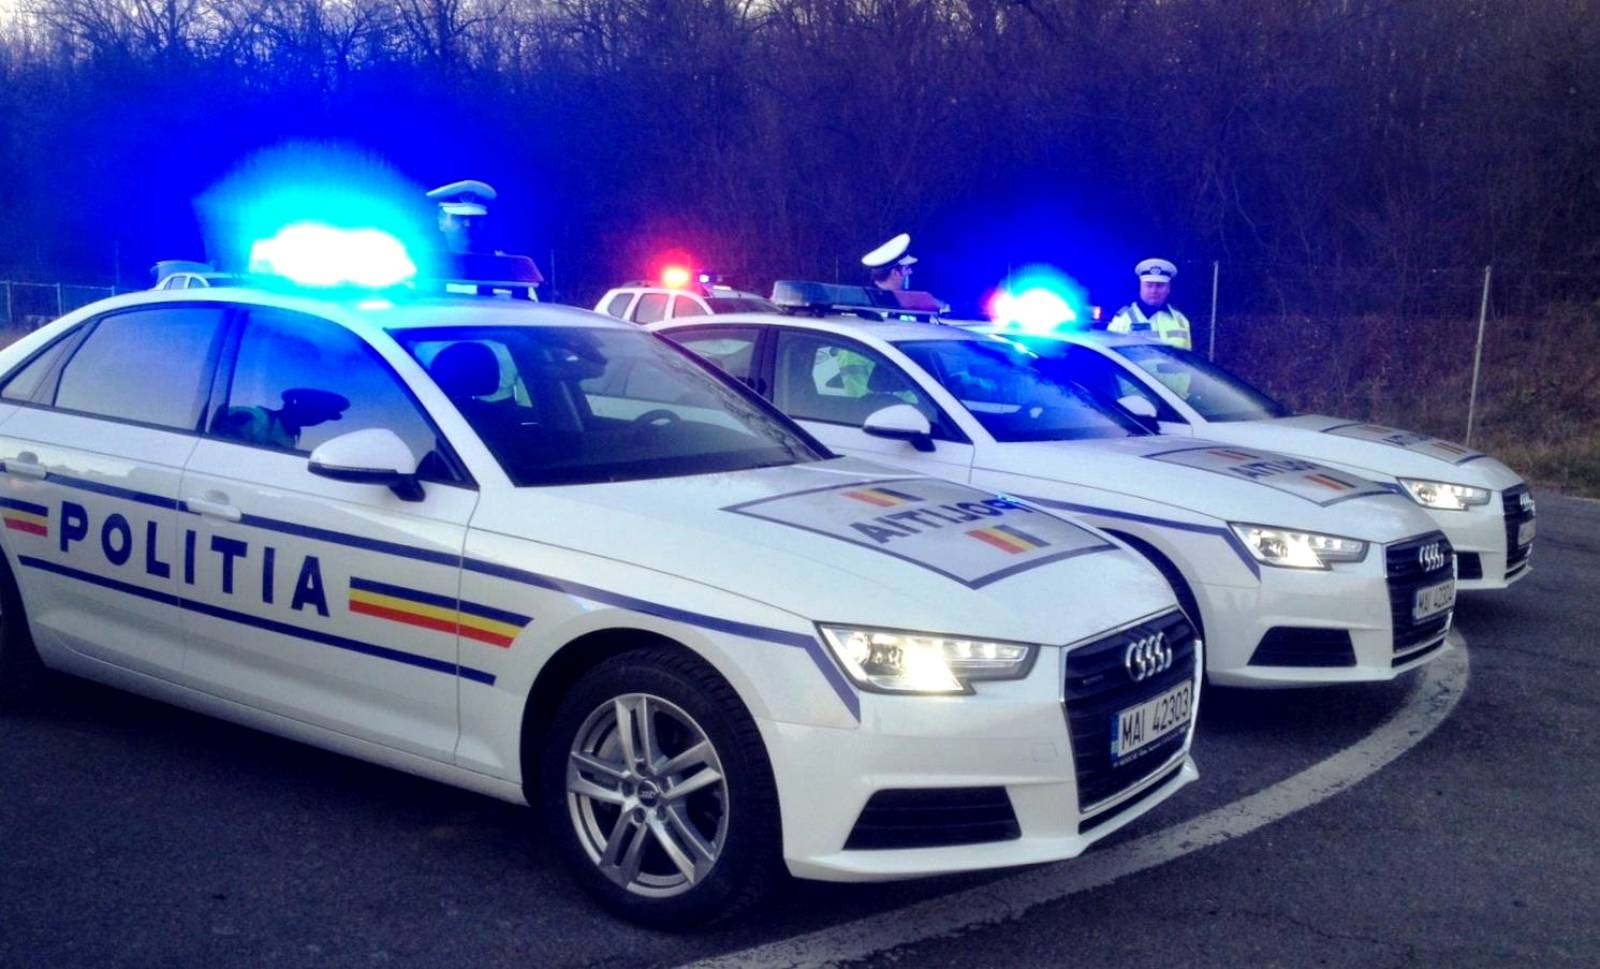 Atención de la policía rumana al conductor